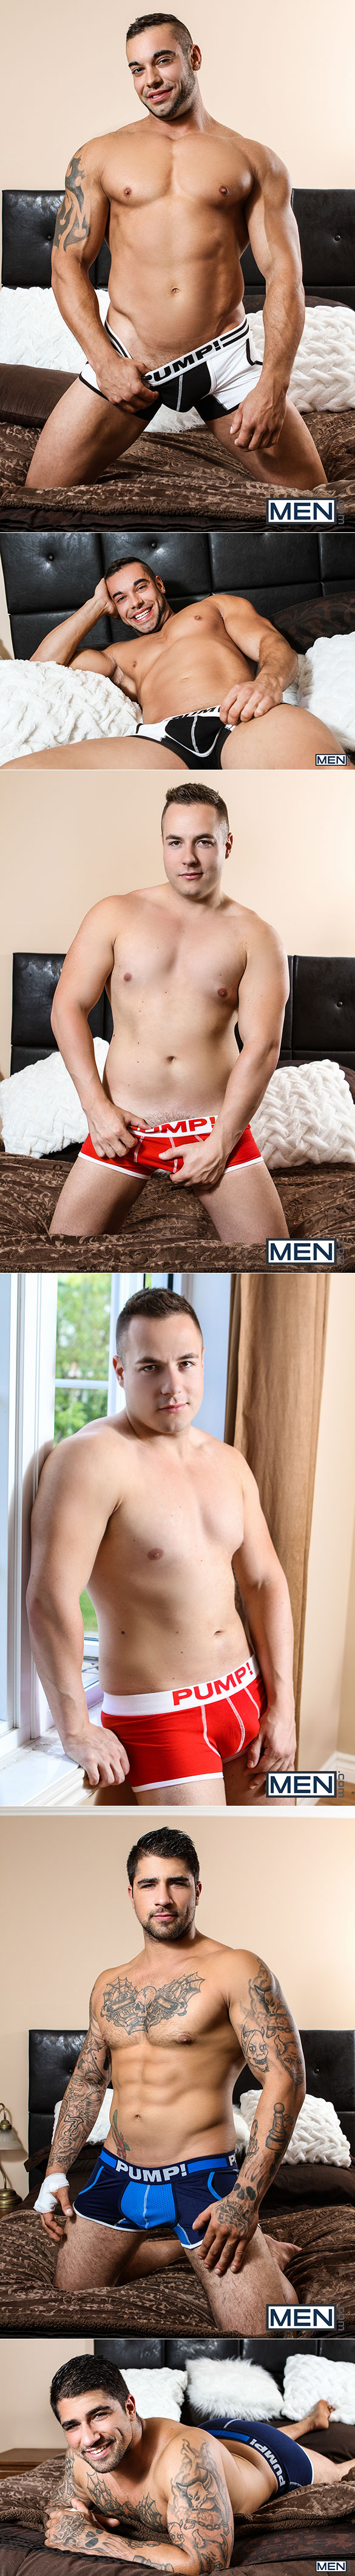 Men.com: Jack Kross and Ryan Bones tag team Tobias James in "Sneaky Slut"